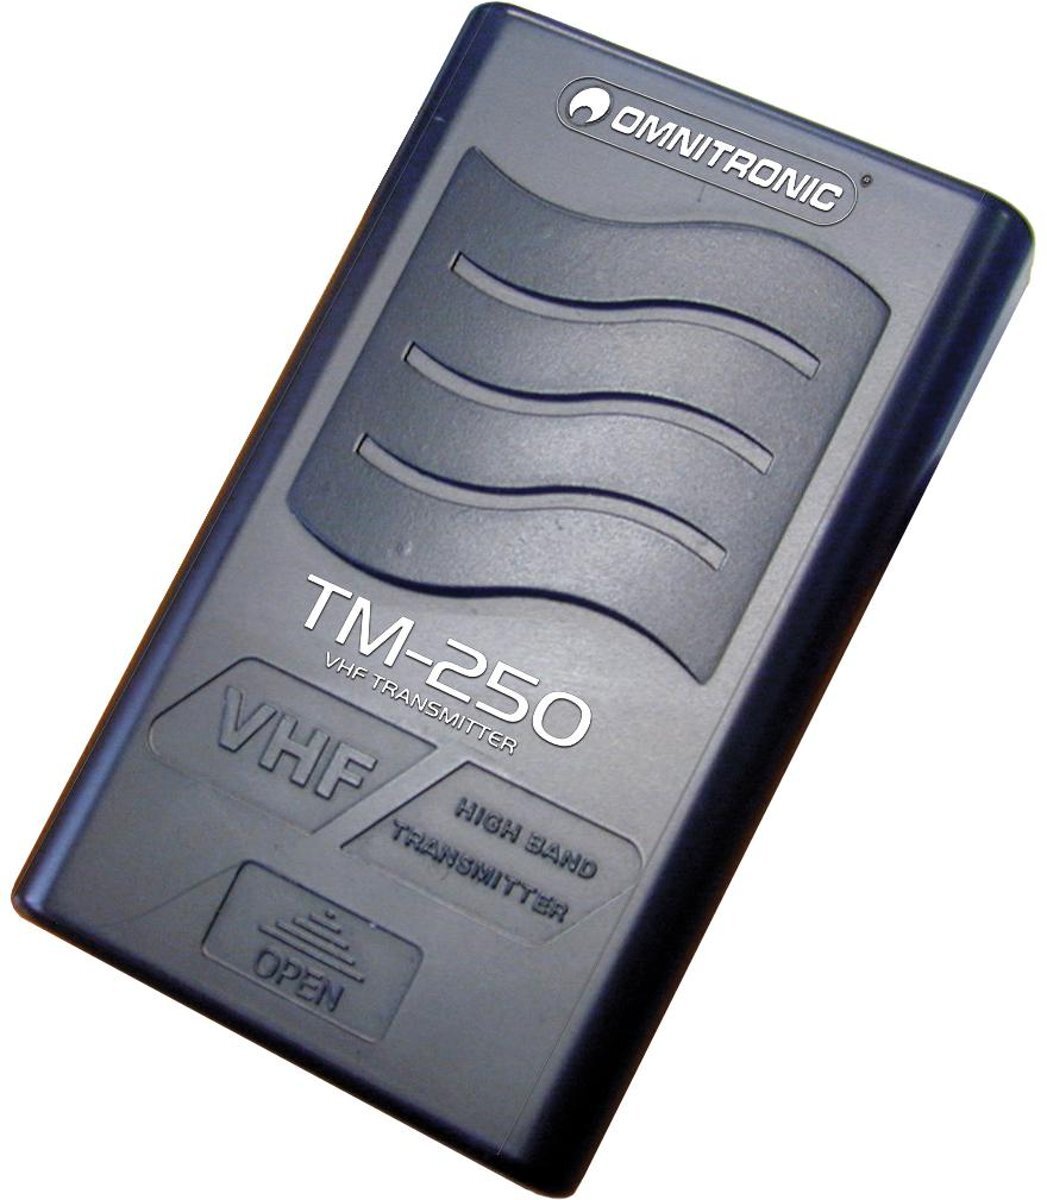 Omnitronic TM-250 Transmitter VHF211.700